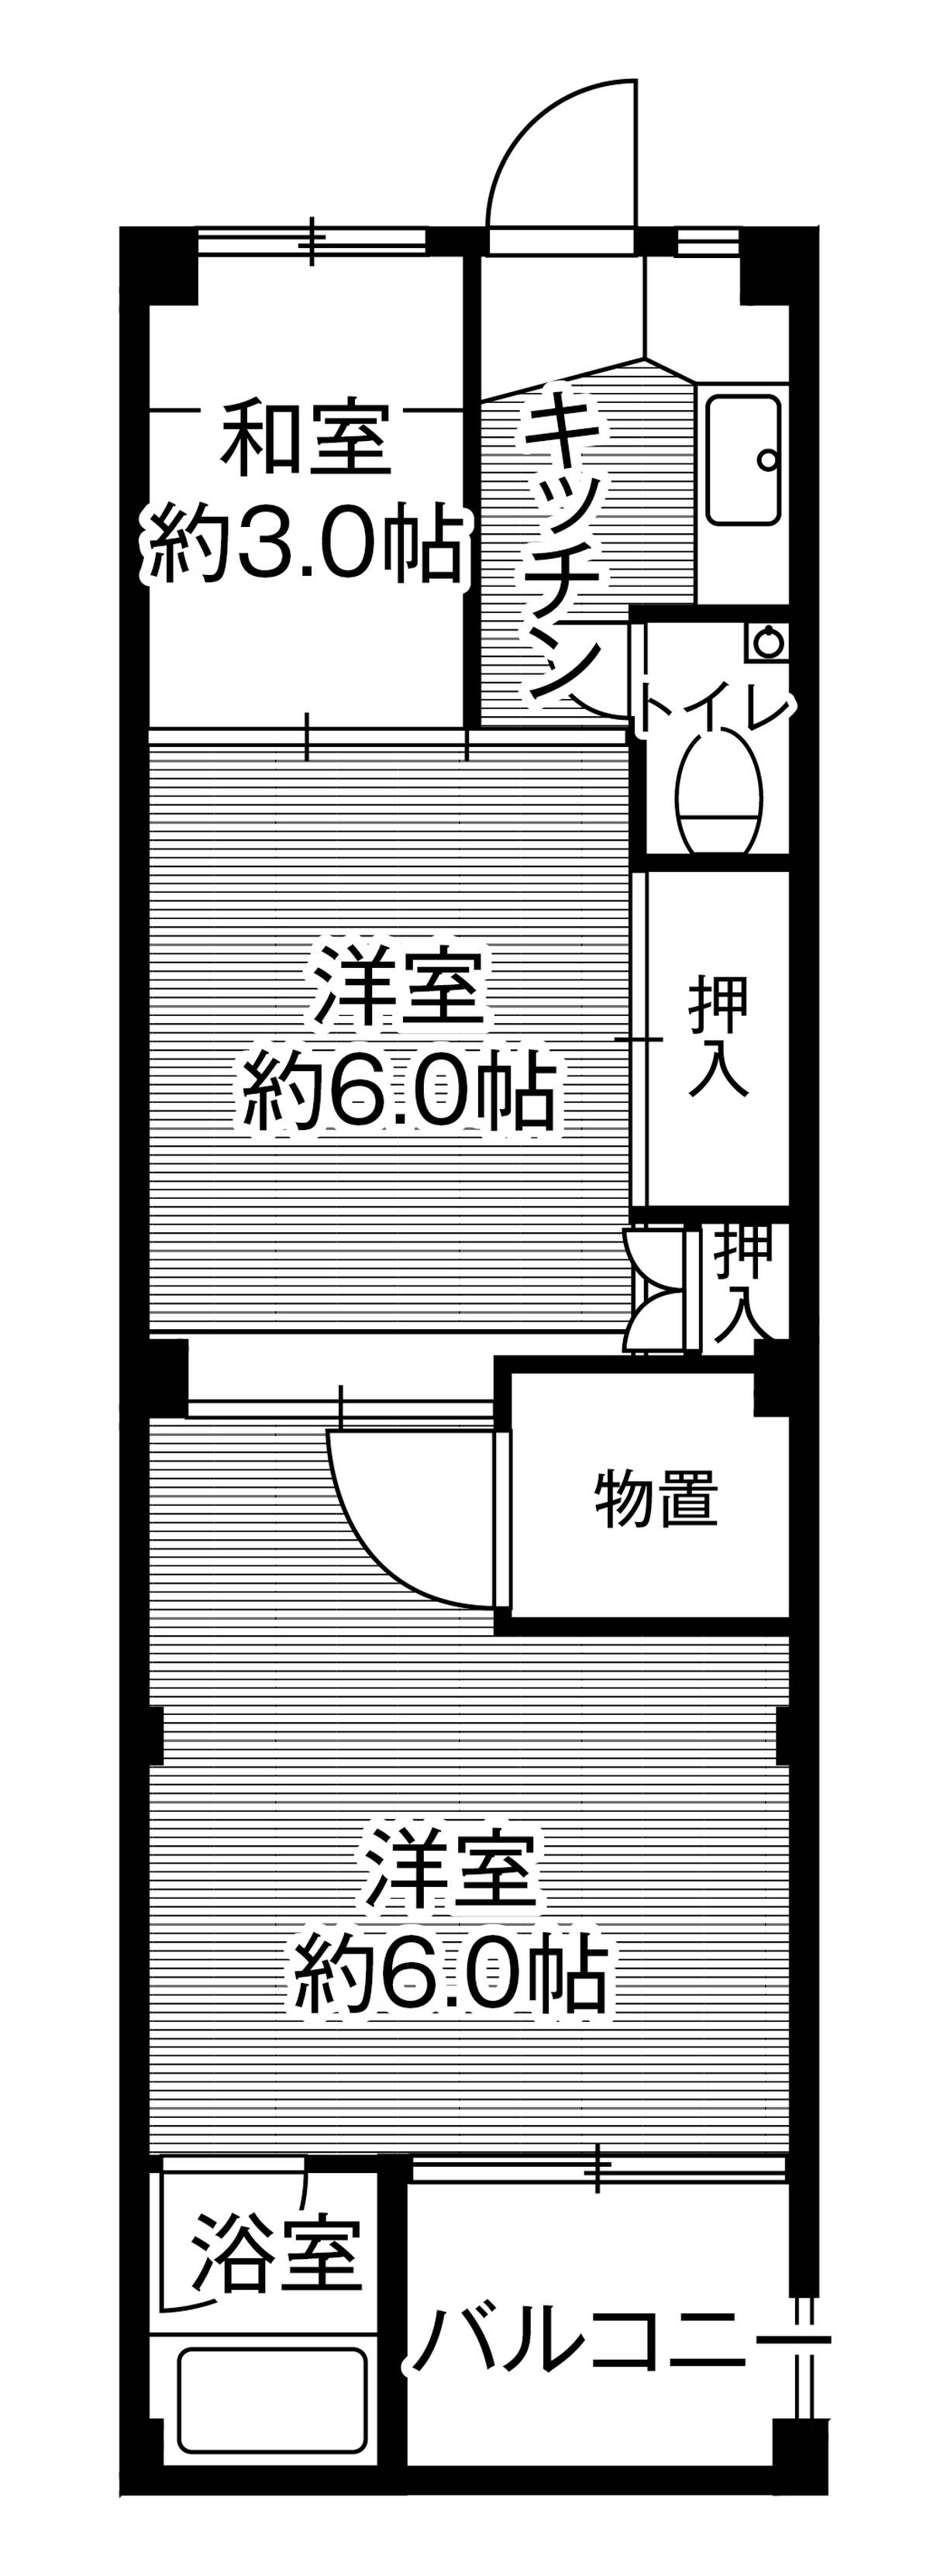 Sơ đồ phòng 2DK của Village House Shimosarachi ở Hatsukaichi-shi